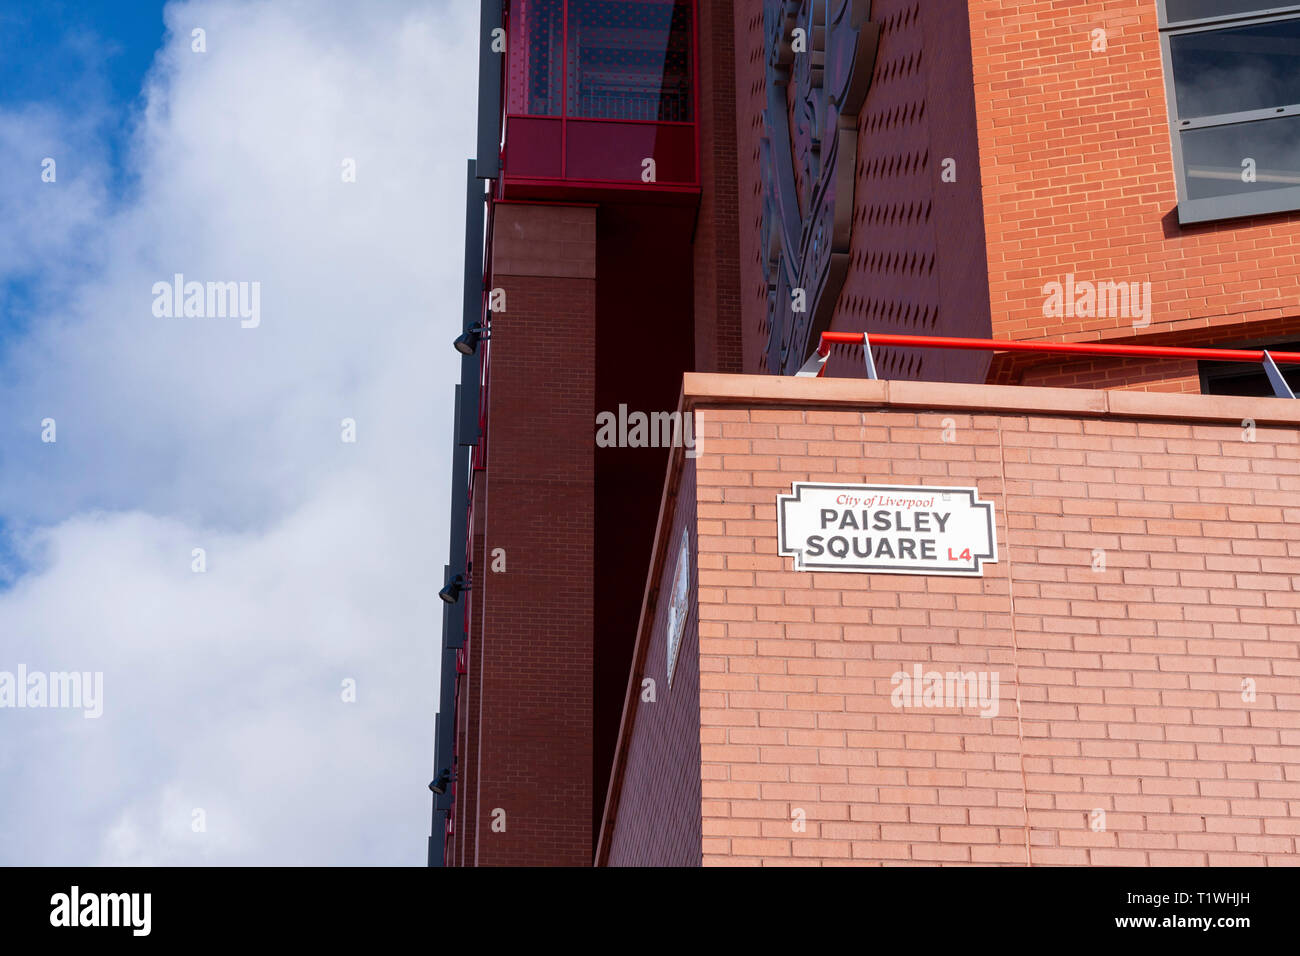 Paisley Square, Teil der neuen Entwicklung Stand bei Anfield Stadium, Liverpool, Großbritannien. Stockfoto